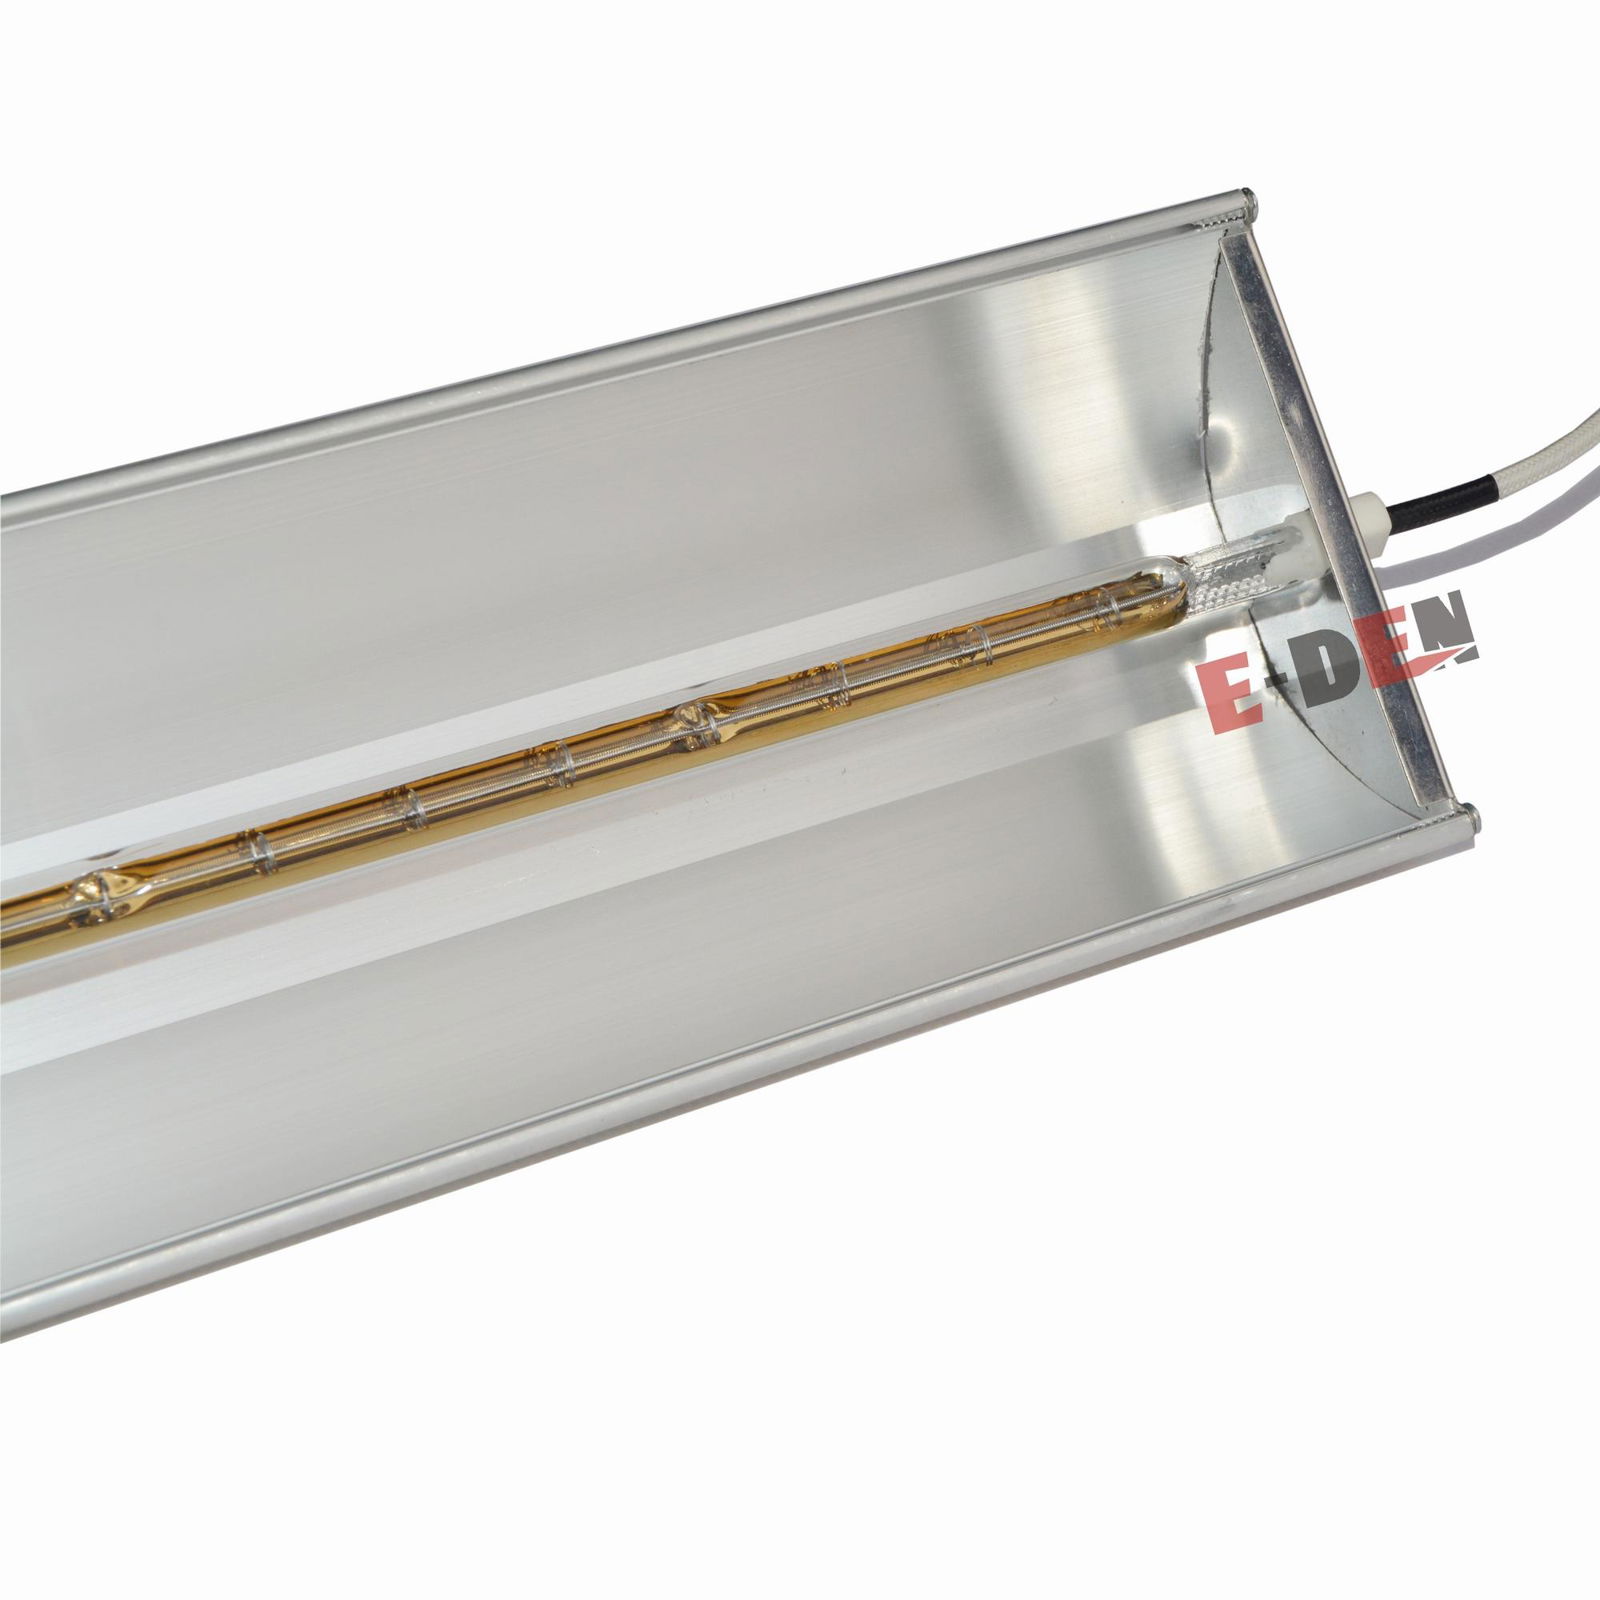 Halogen Infrared Lamp Quartz Tube Infrared Heater Lamp 4